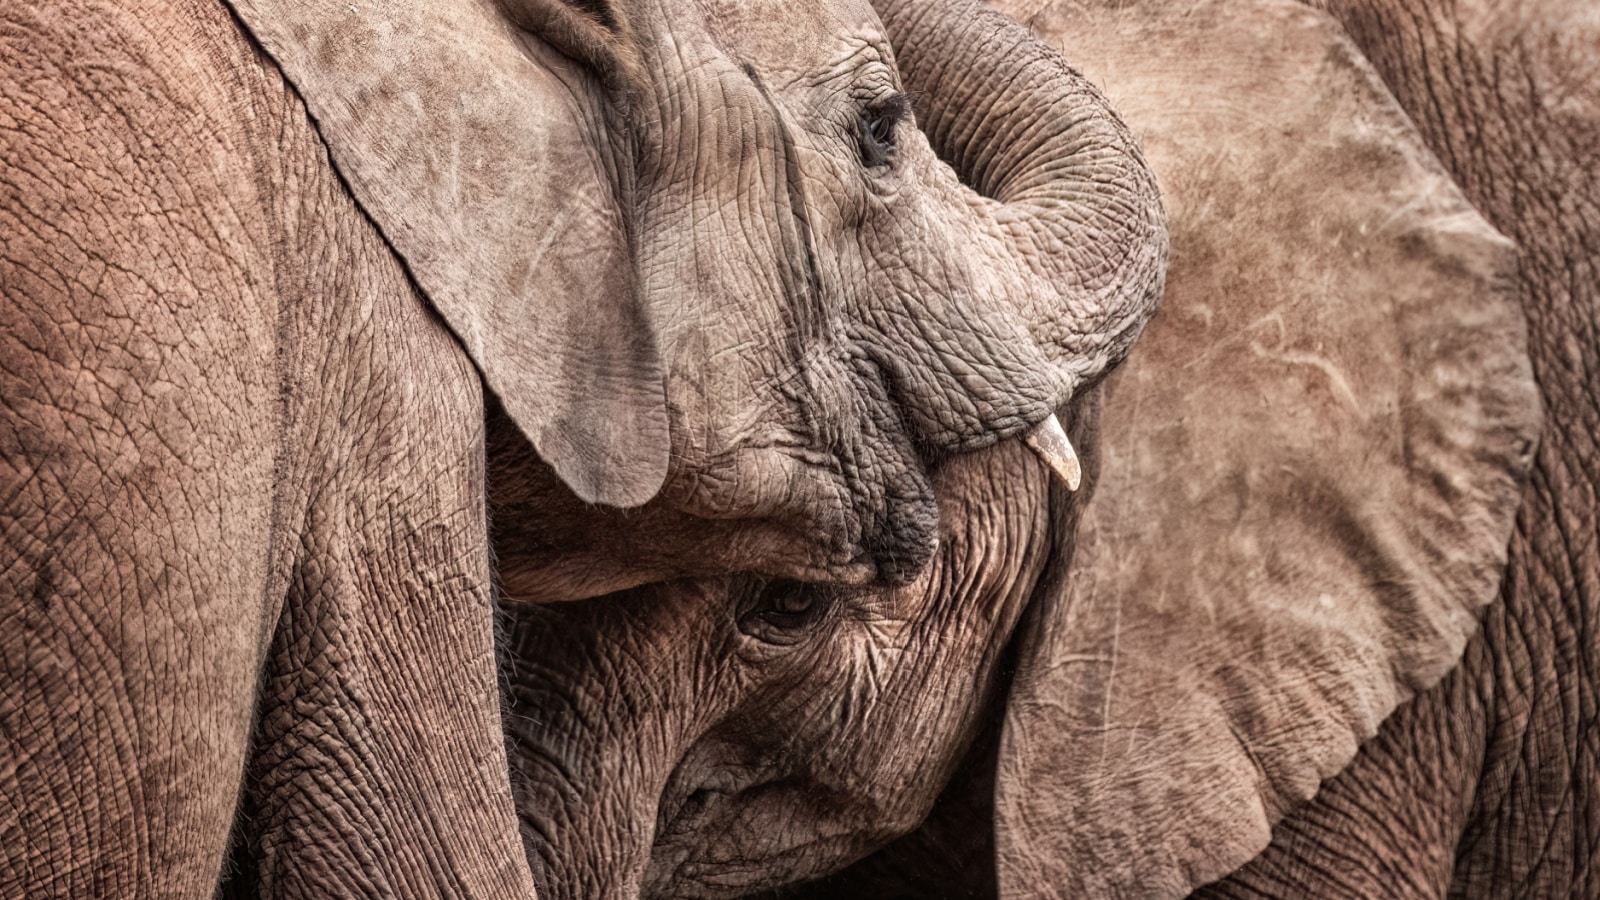 young orphan elephants